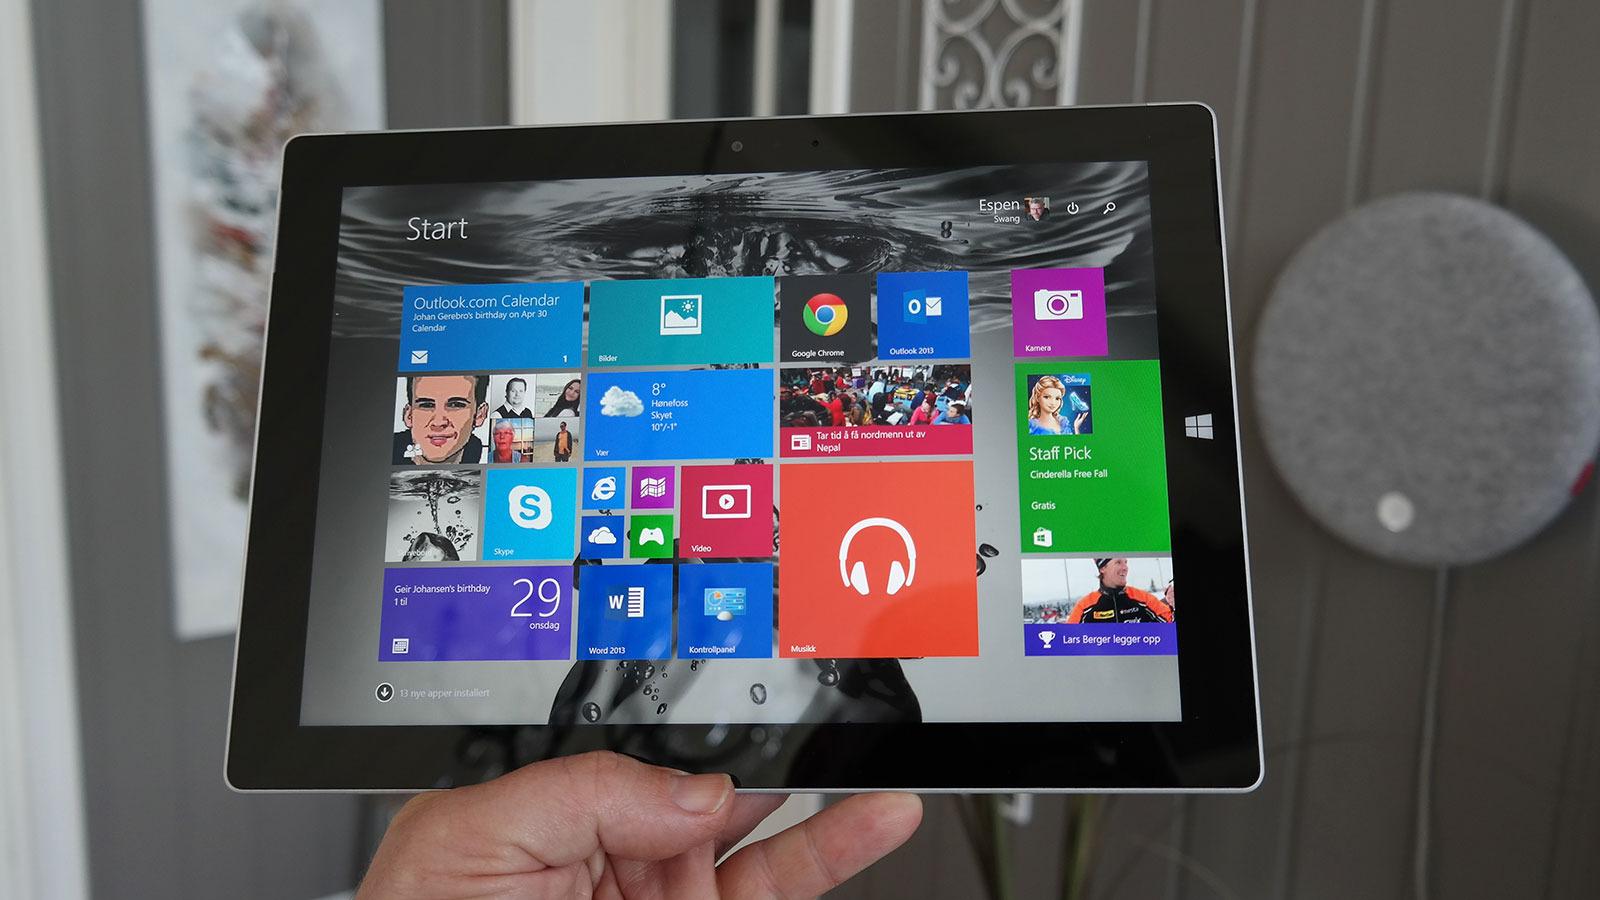 Surface 3 duger til de aller fleste av de hverdagslige oppgavene, men kommer til kort om du virkelig gir den utfordringer. Foto: Espen Irwing Swang, Tek.no